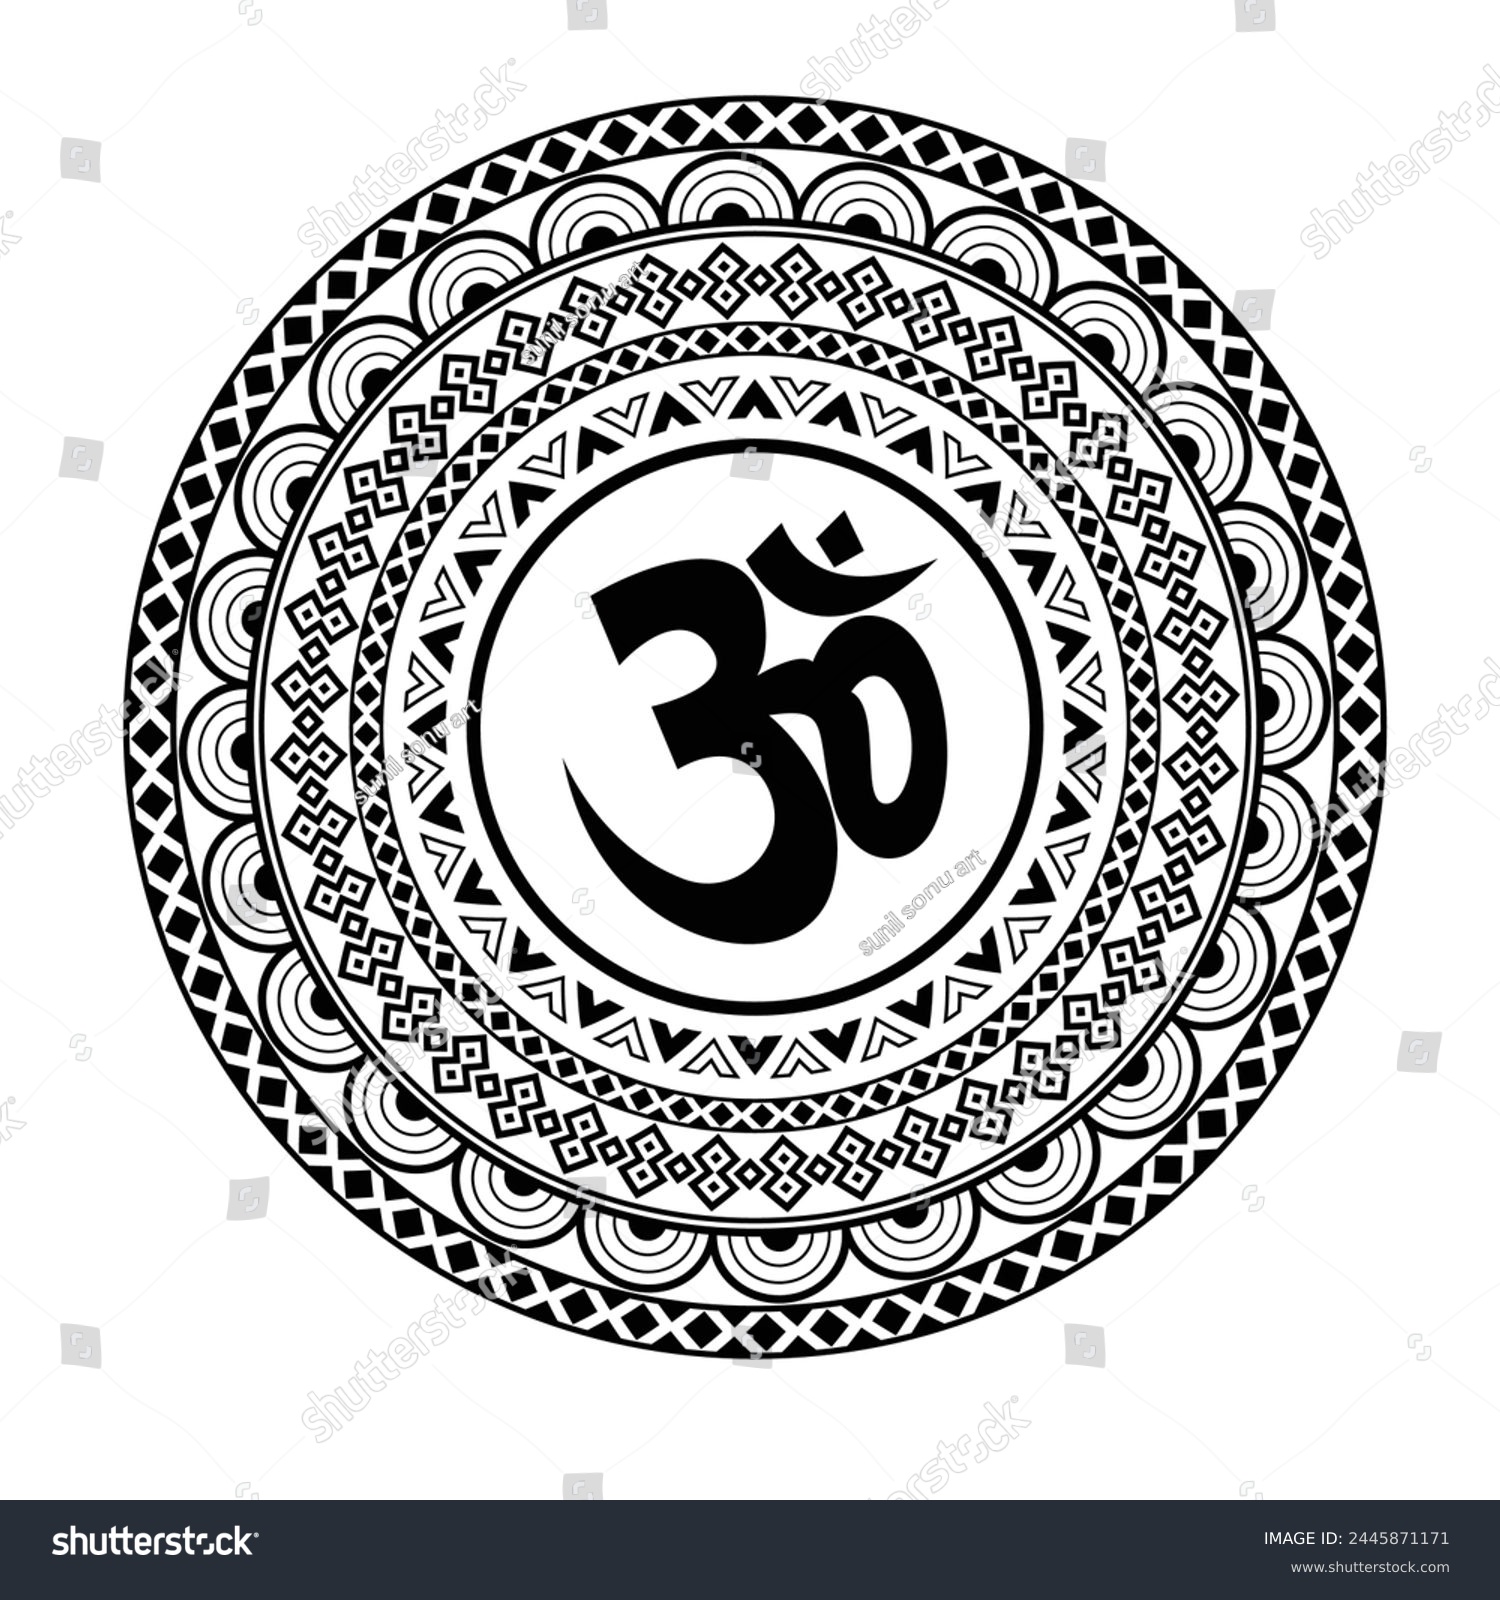 SVG of Mandala art with om symbol graphic design. svg